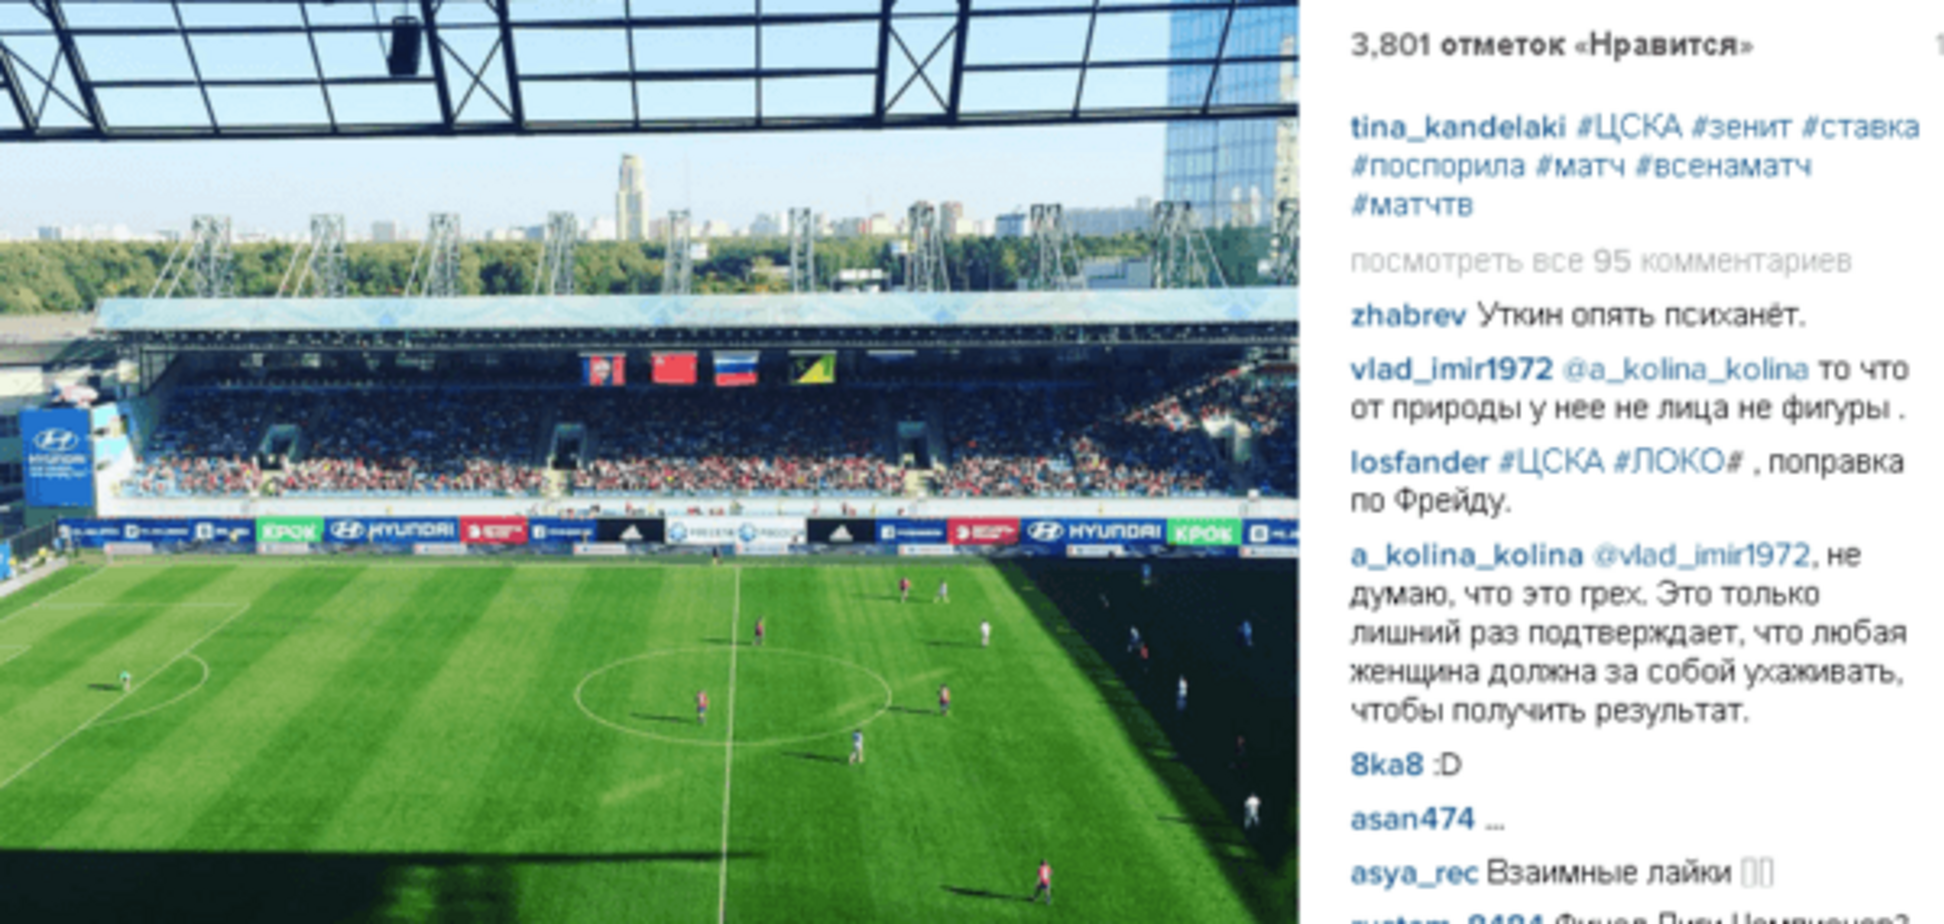 Тина Канделаки опозорилась во время футбольного матча в России